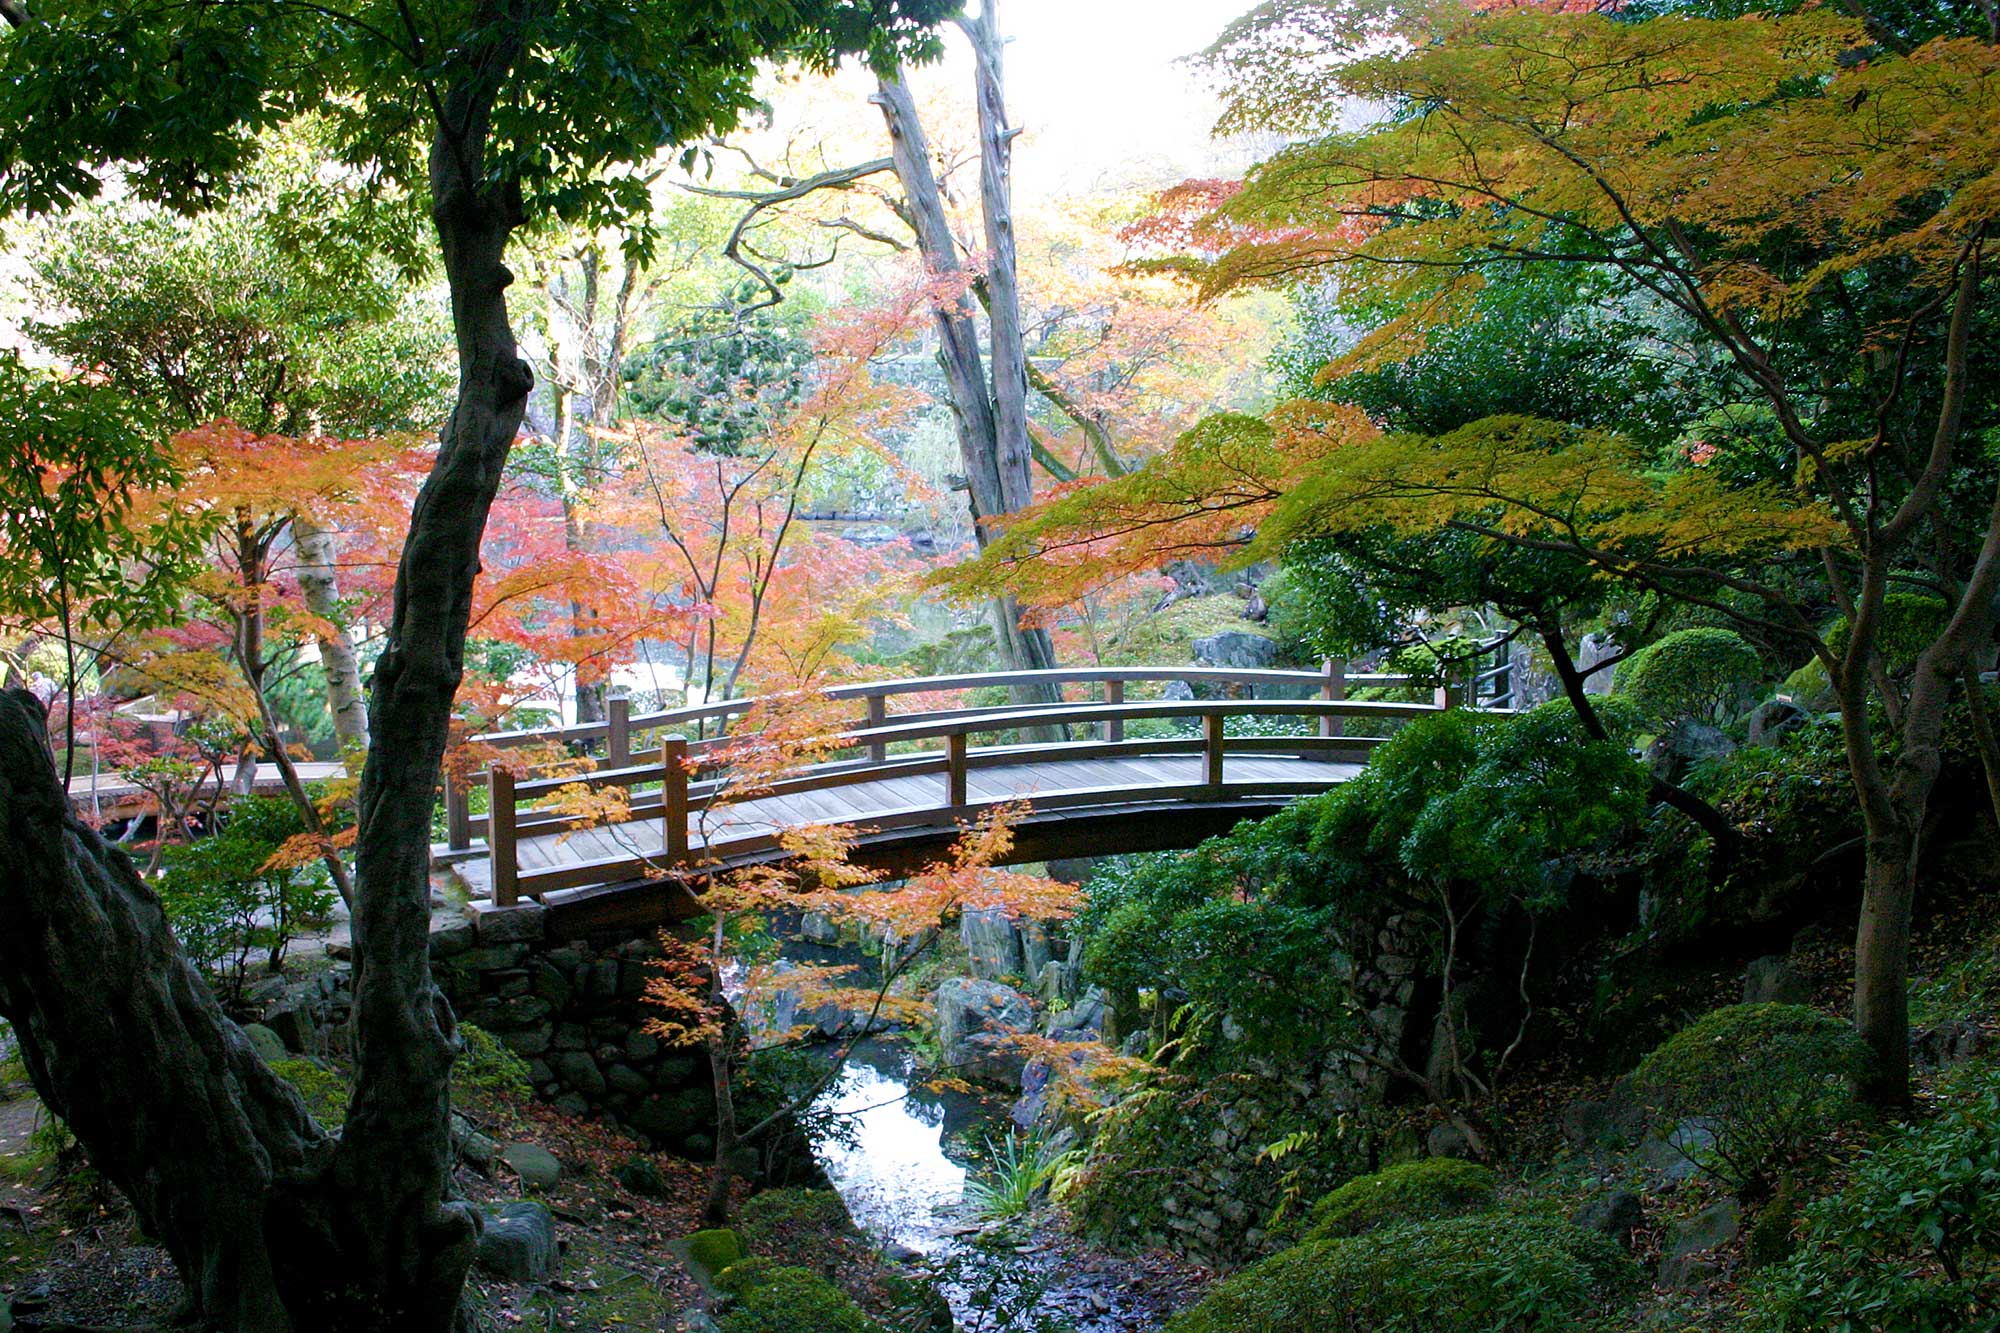 Bridge and autumn leavesの写真